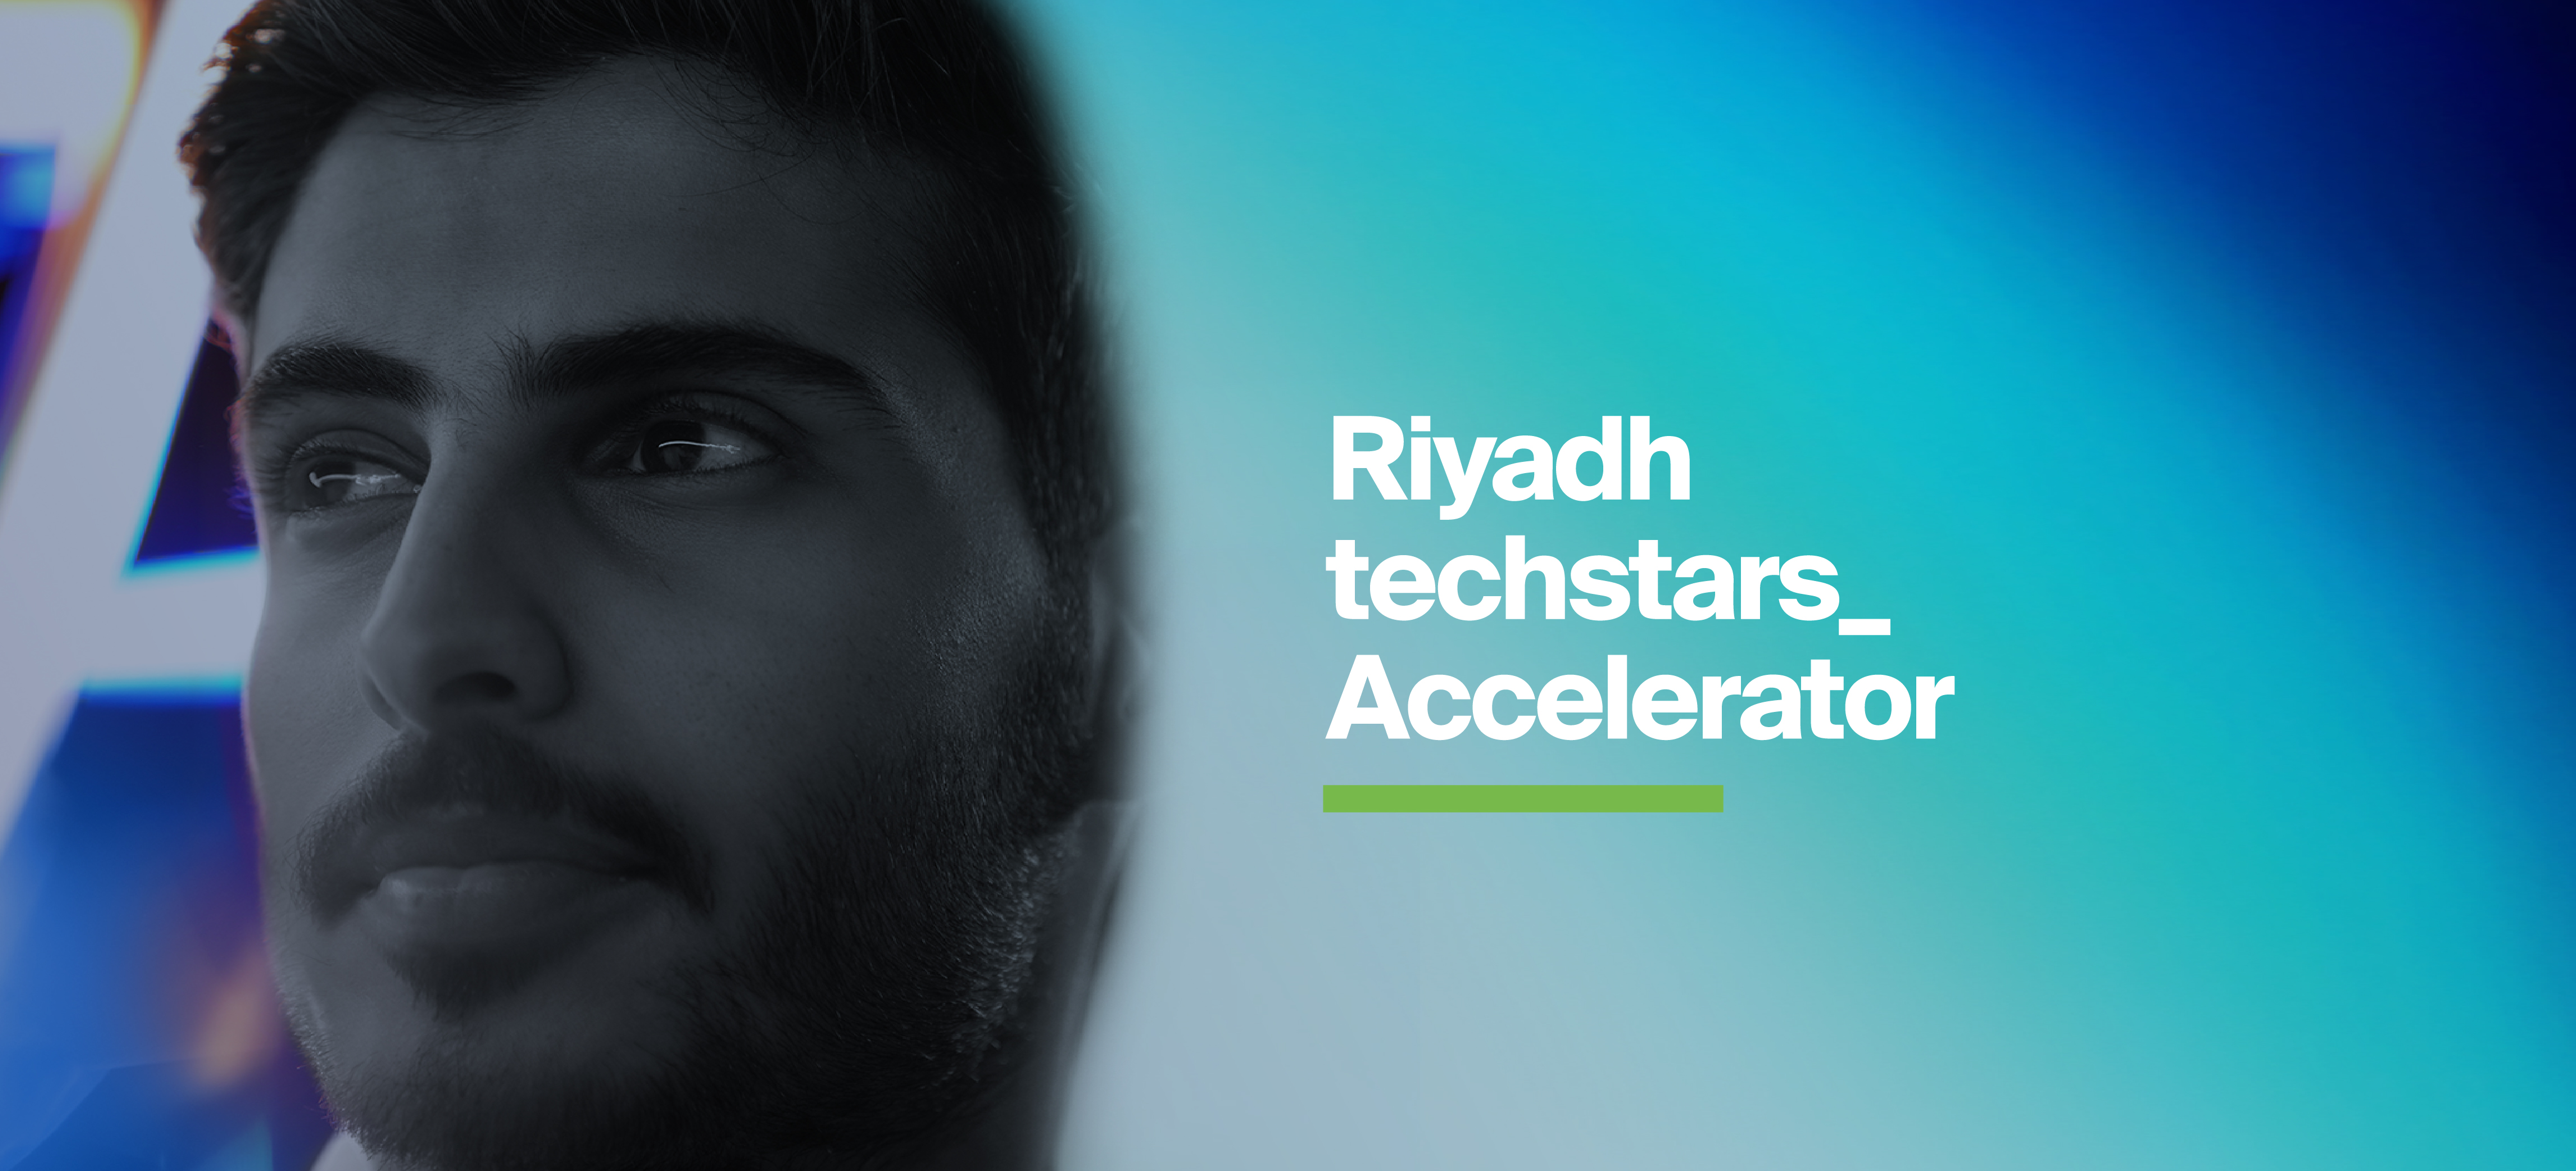 "تيكستارز الرياض" تبدأ تسجيل الشركات الناشئة التقنية لدعمها وتسريع نموها وتمويلها